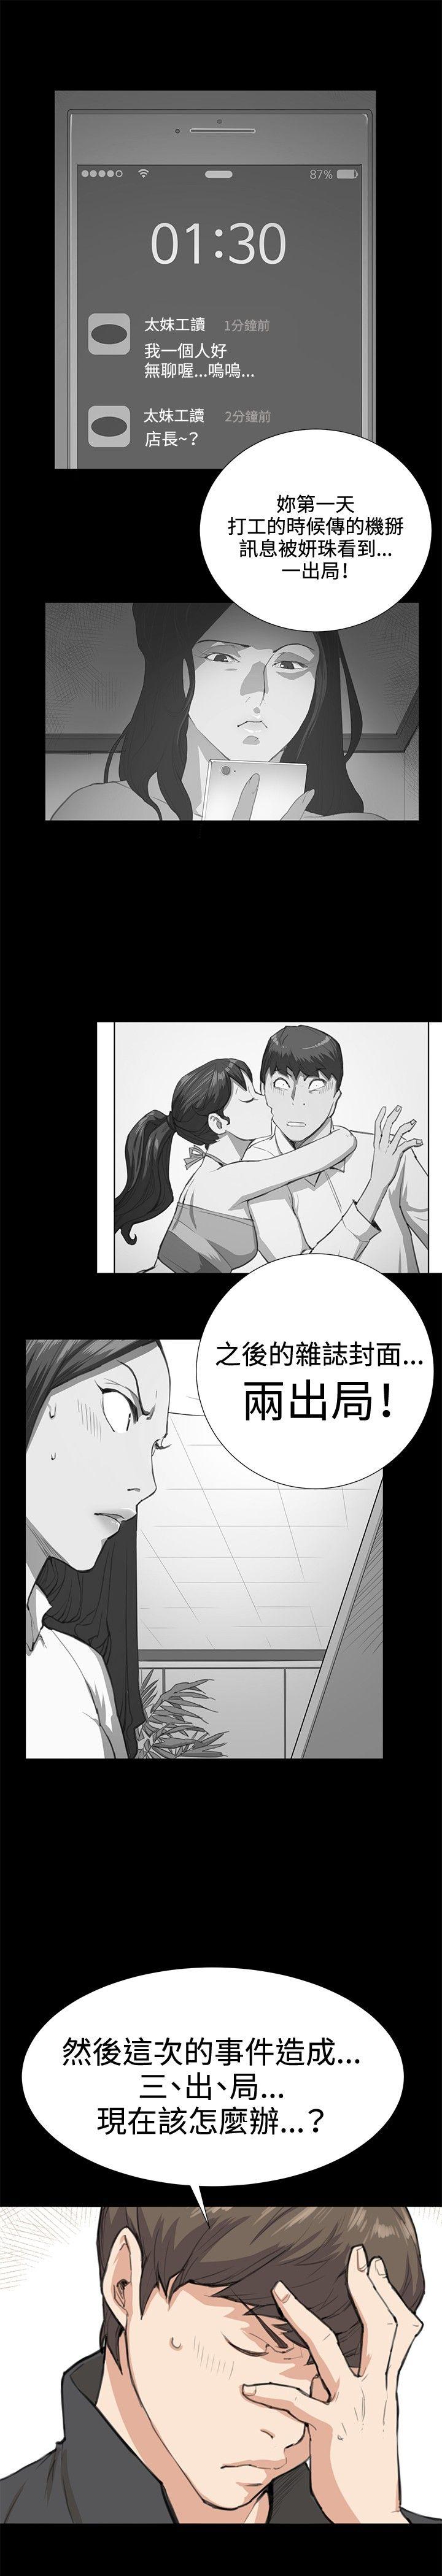 韩国污漫画 深夜便利店 第24话 24